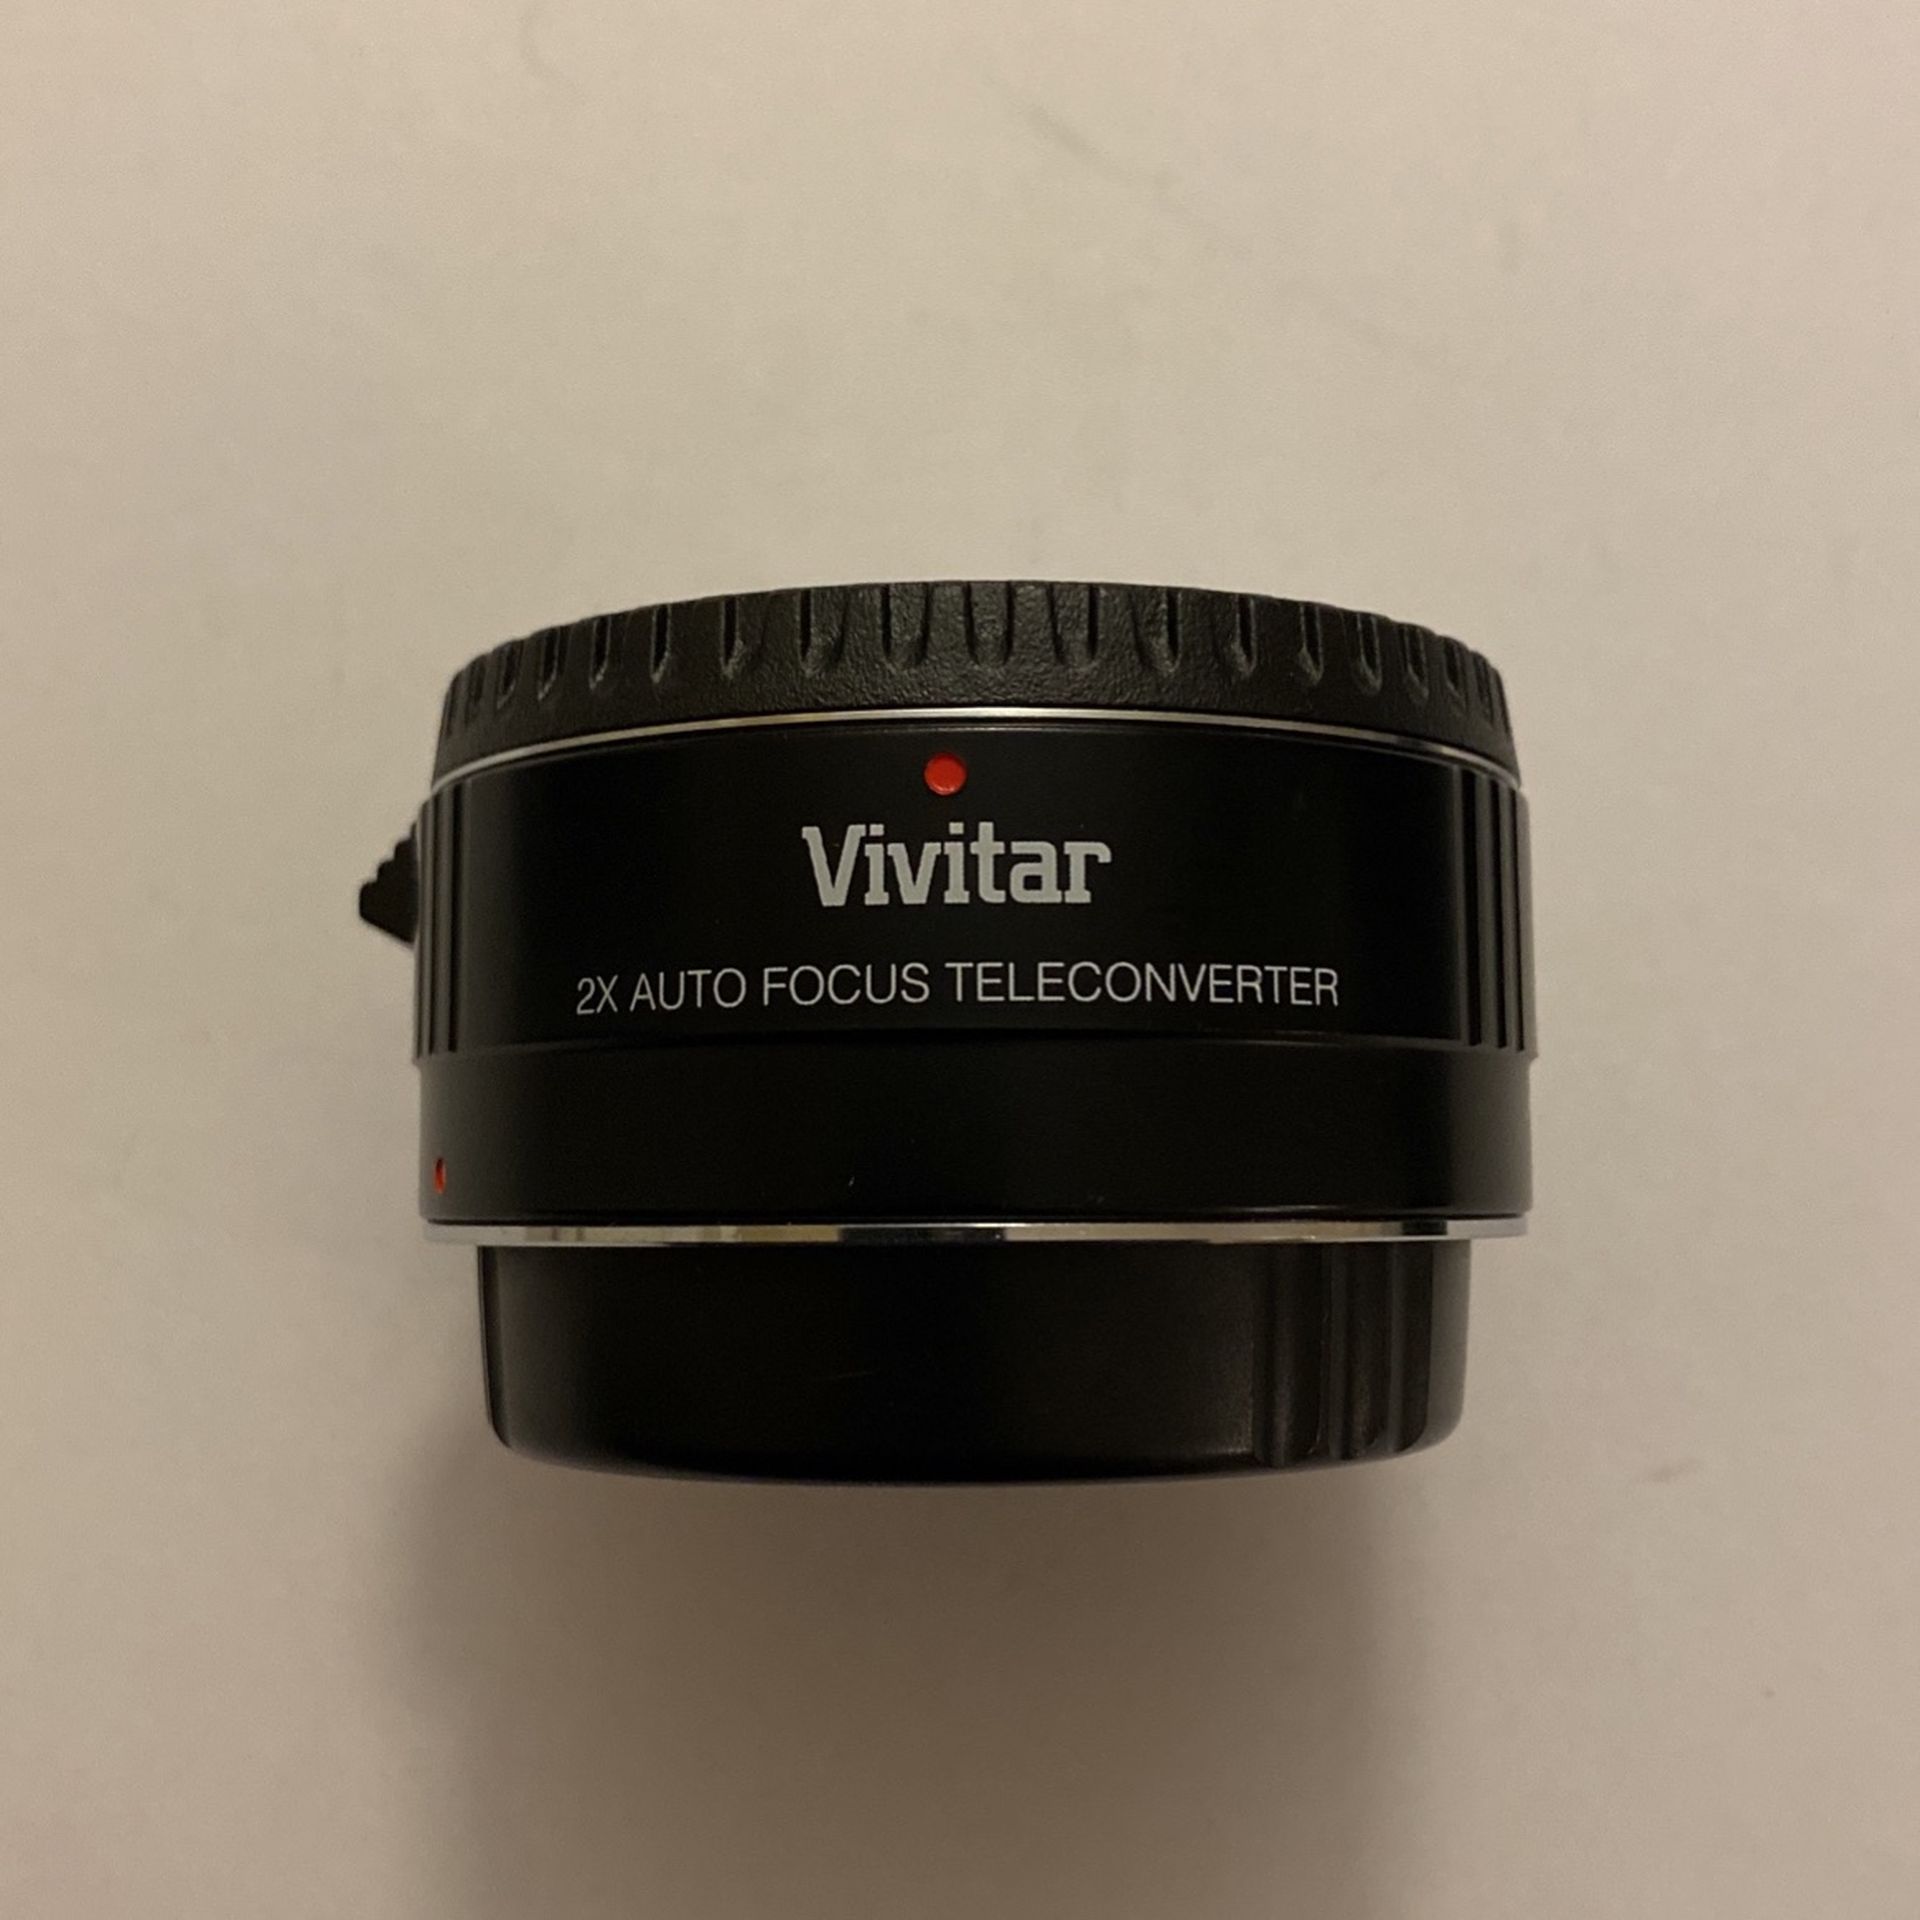 Vivitar 5 Elements 2x Autofocus Teleconverter for Canon EF/EF-S Mount Lens